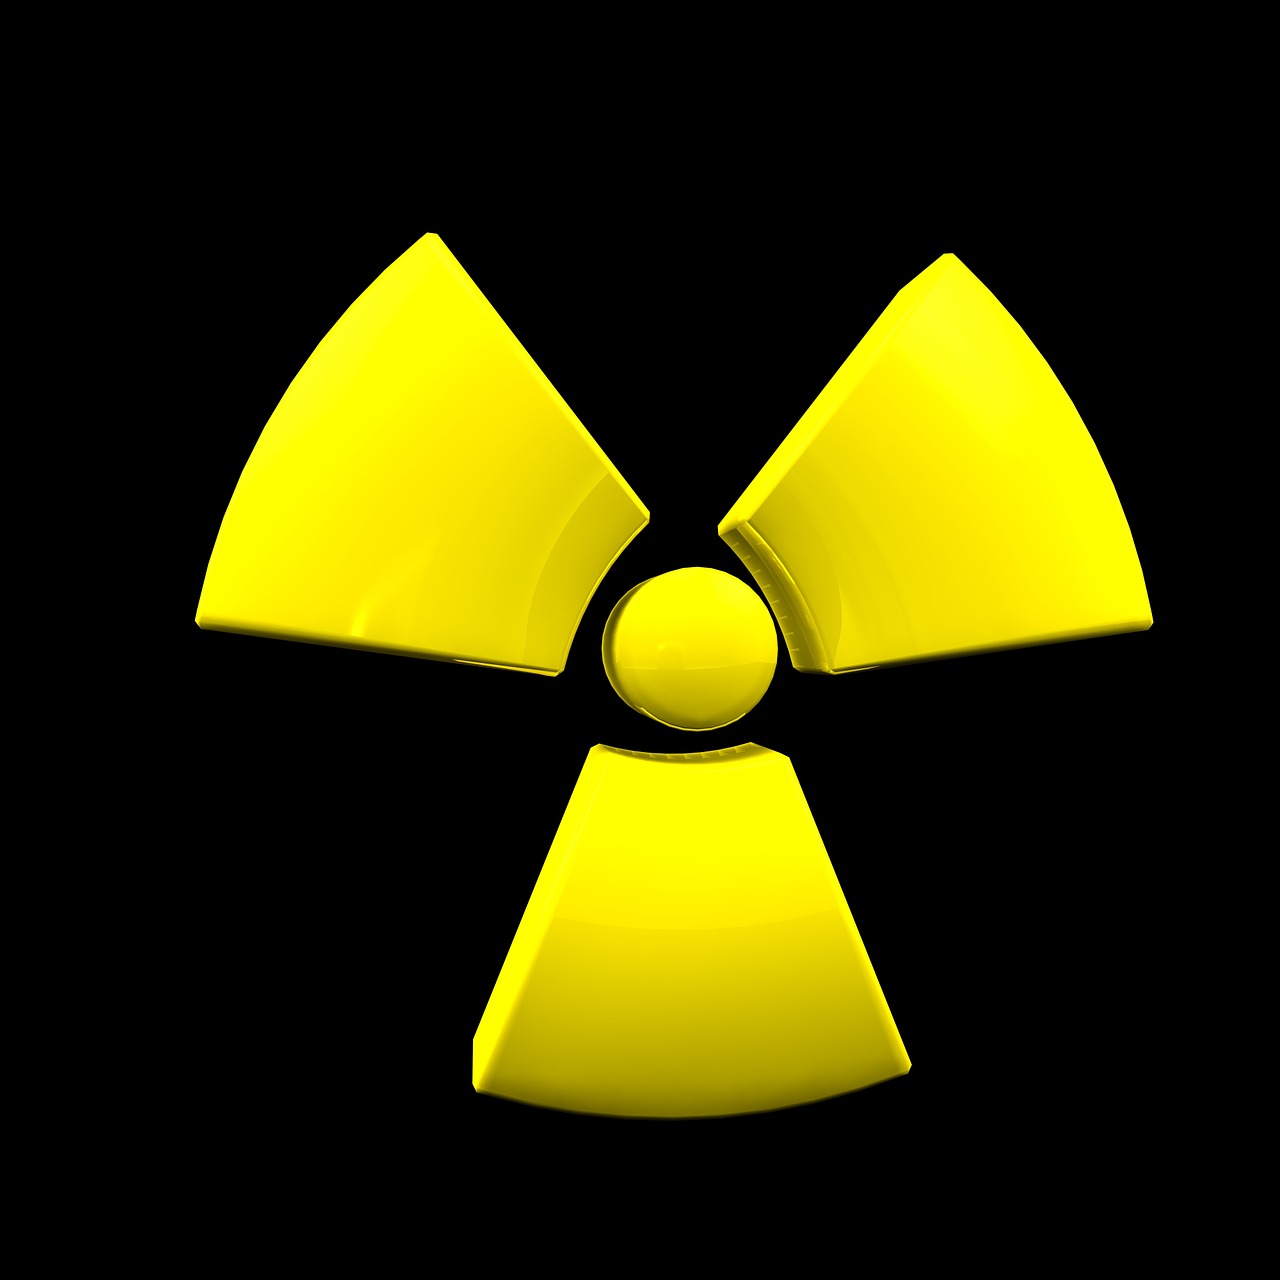 Atomas, Atominė Energija, Simbolis, Protonas, Branduolio Dalijimas, Branduolinė, Radioaktyvus, Atominis Branduolys, Elektronas, Atominė Jėgainė